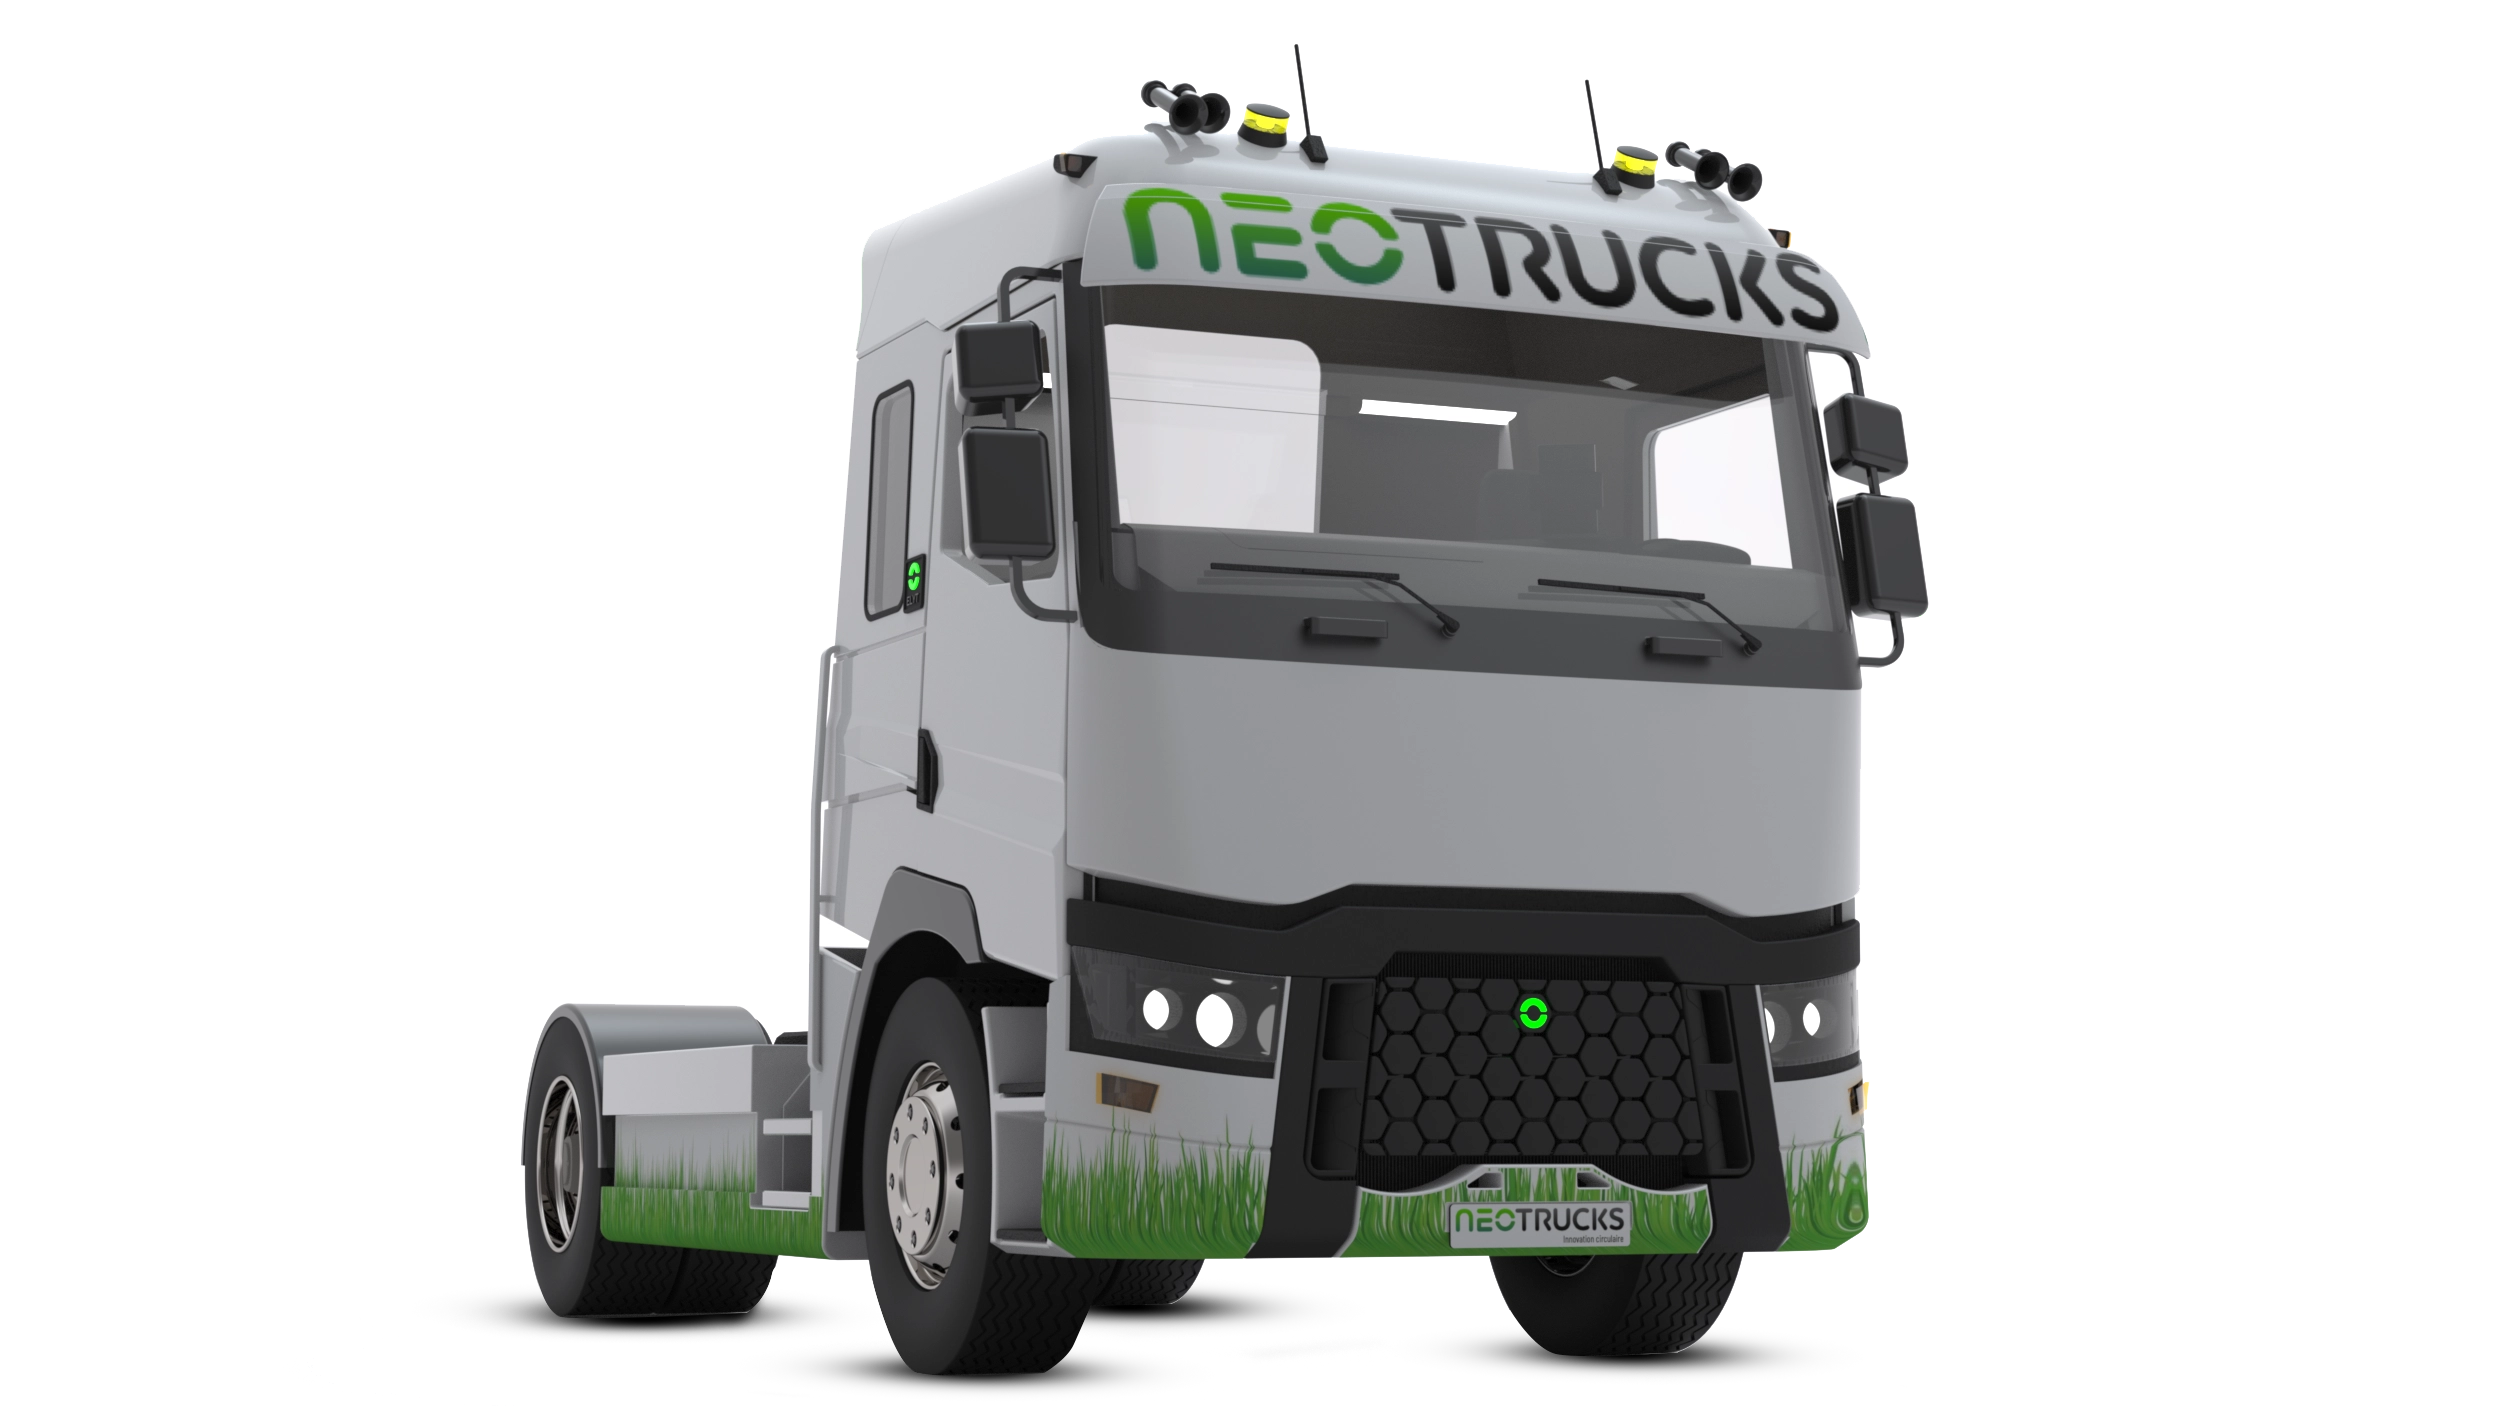 Tracteur de parc électrique pour réduire l'empreinte carbone mondiale - NEOTRUCKS